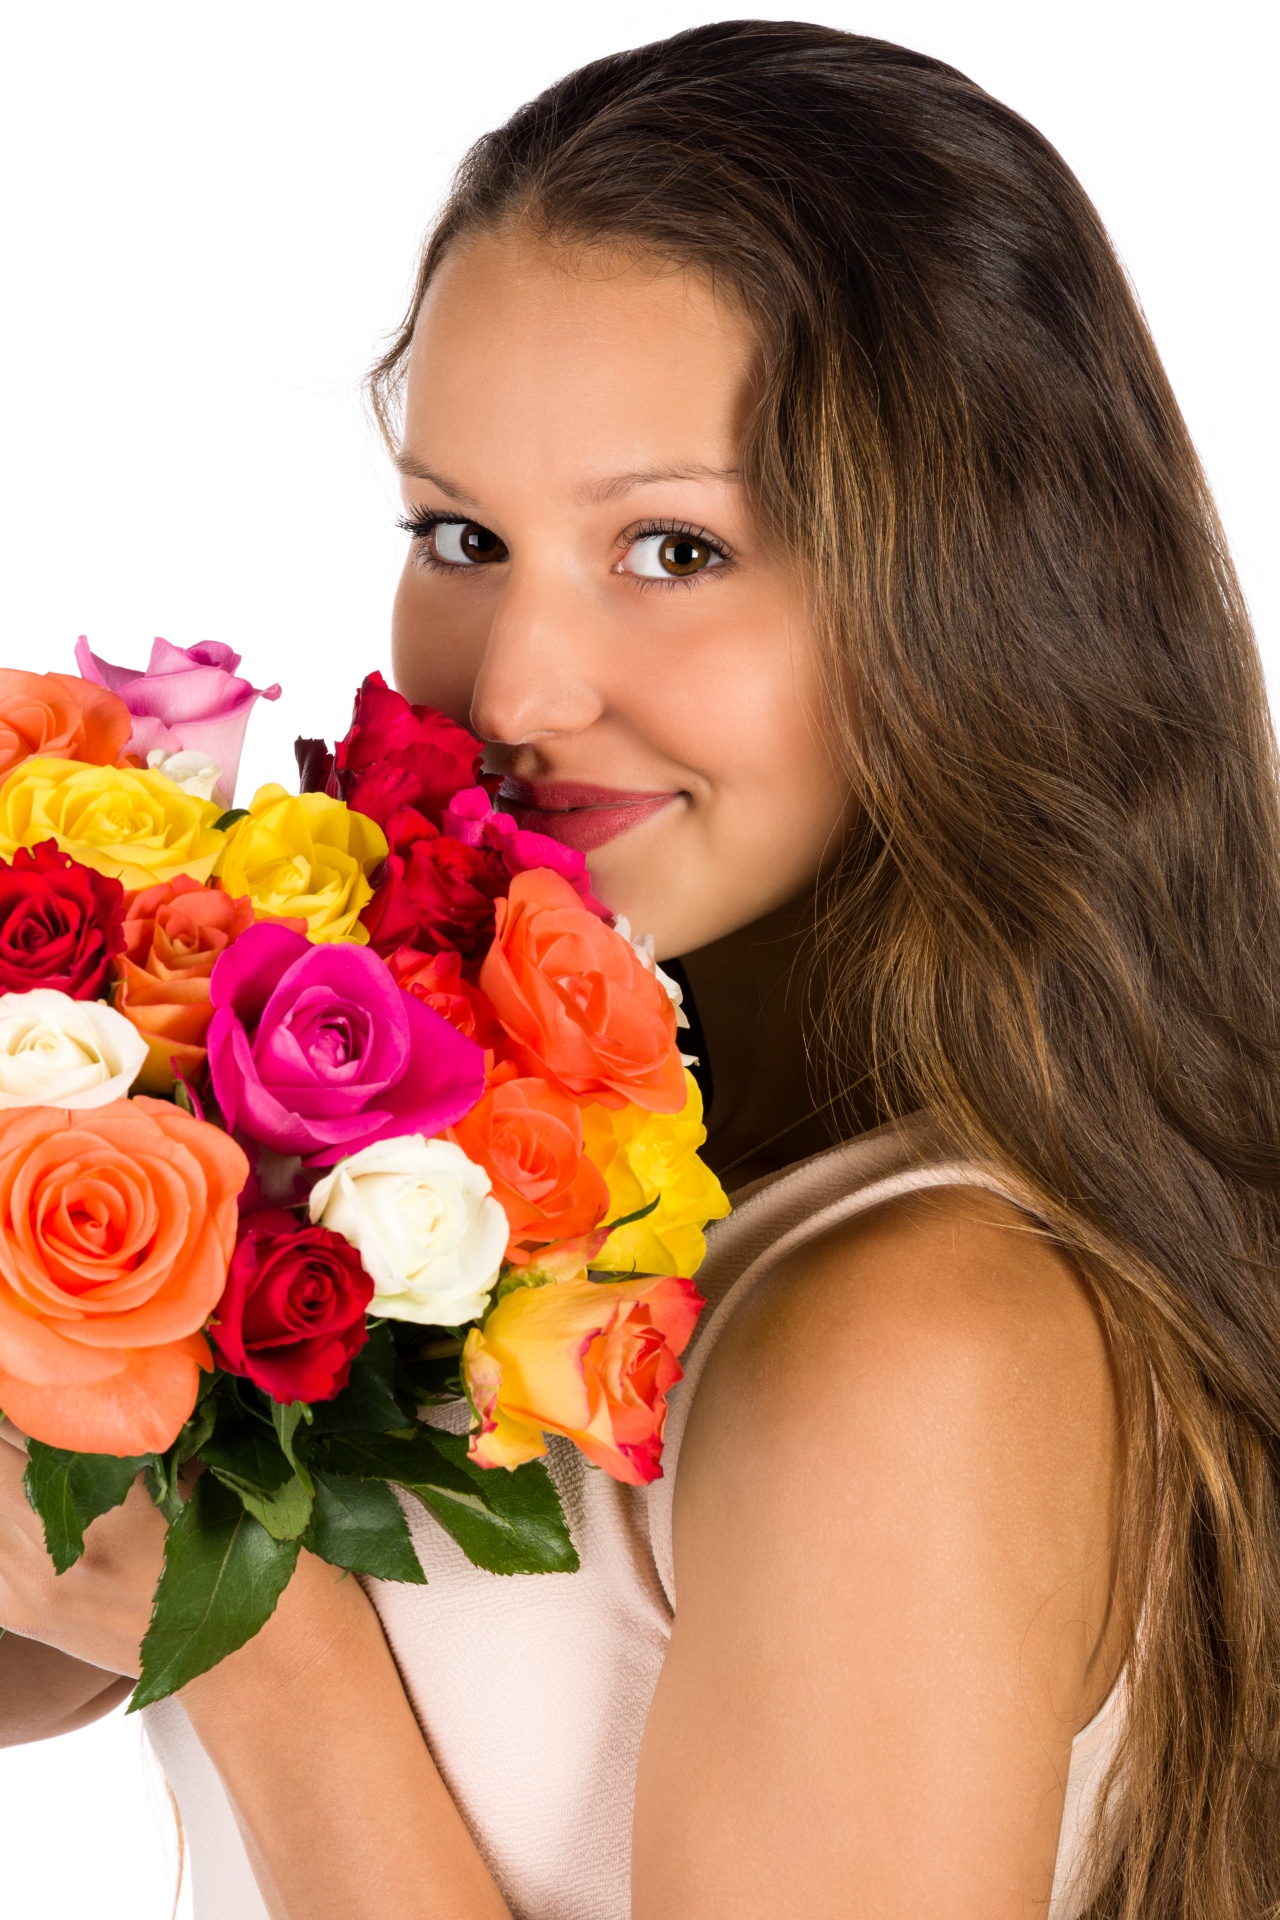 Mulher com flores bouquet